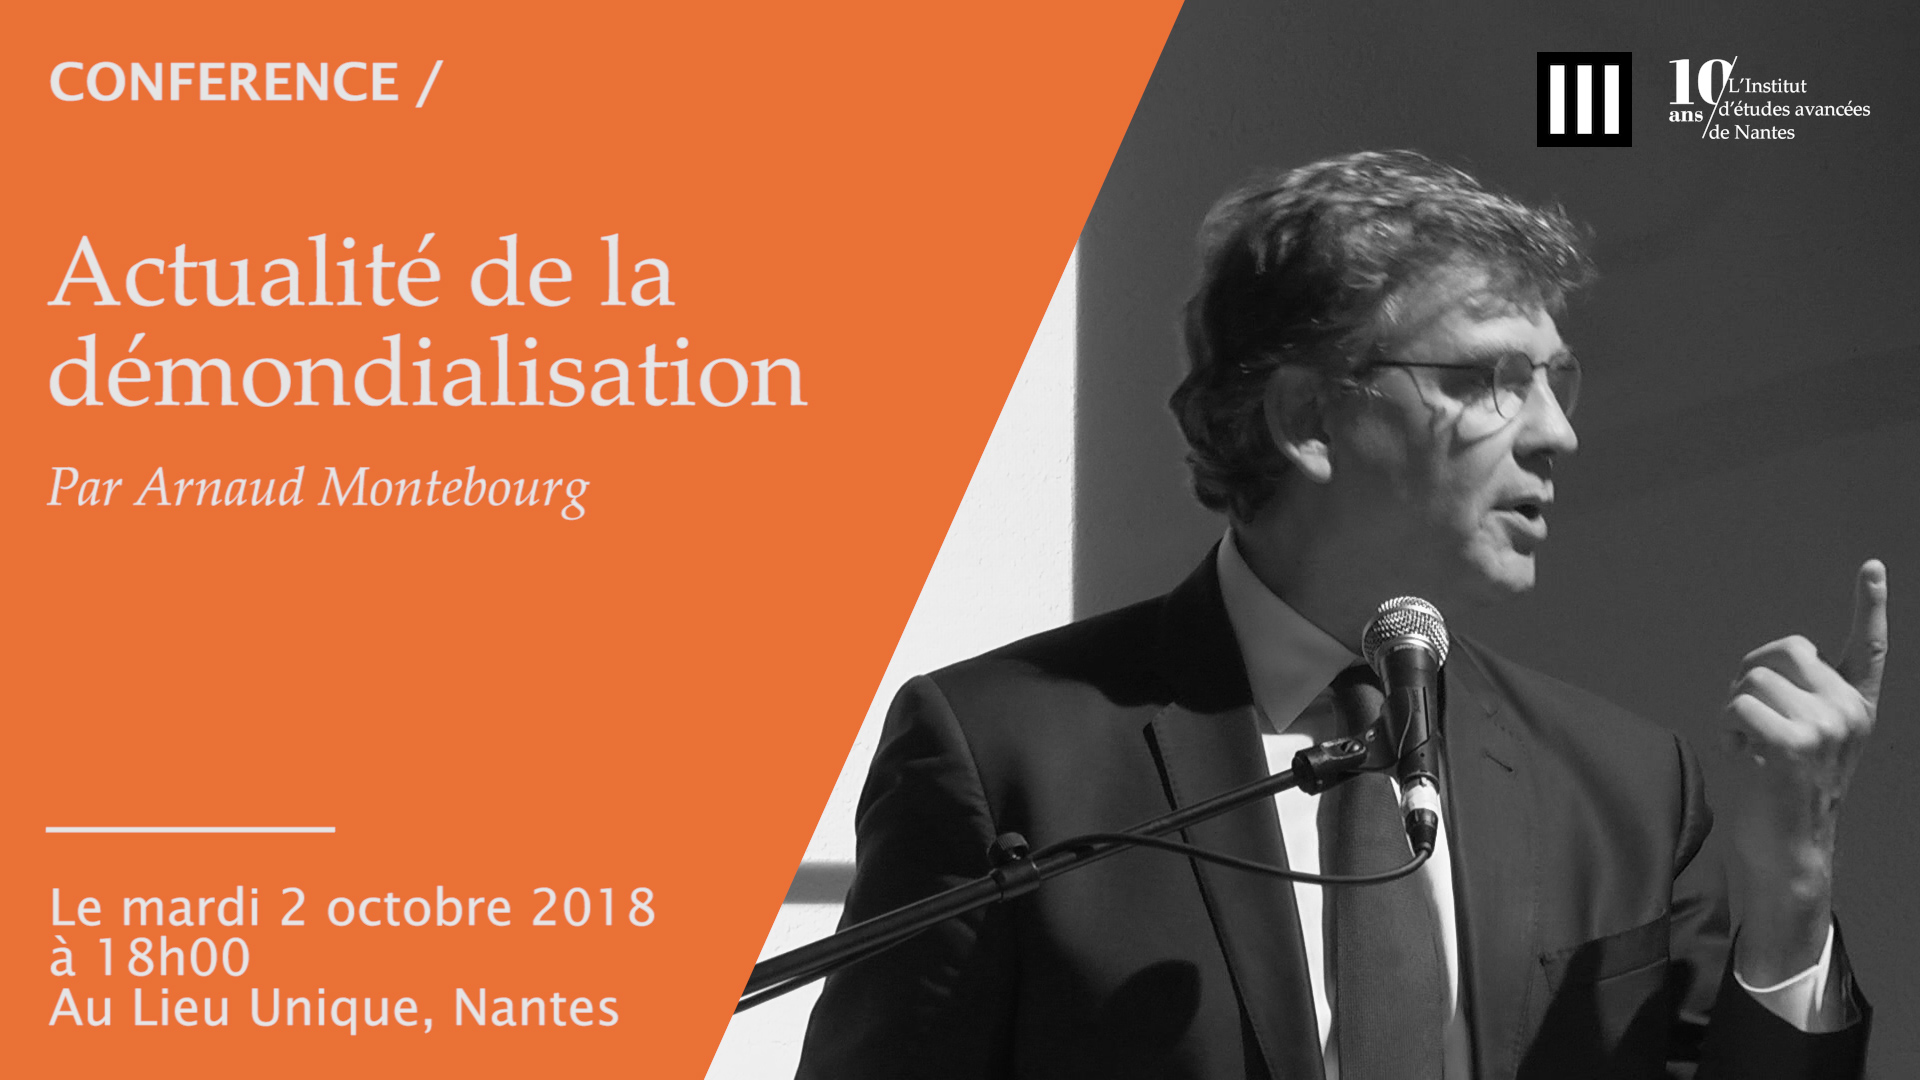 Conférence #192 IEAoLu d'Arnaud Montebourg : " Actualité de la démondialisation "